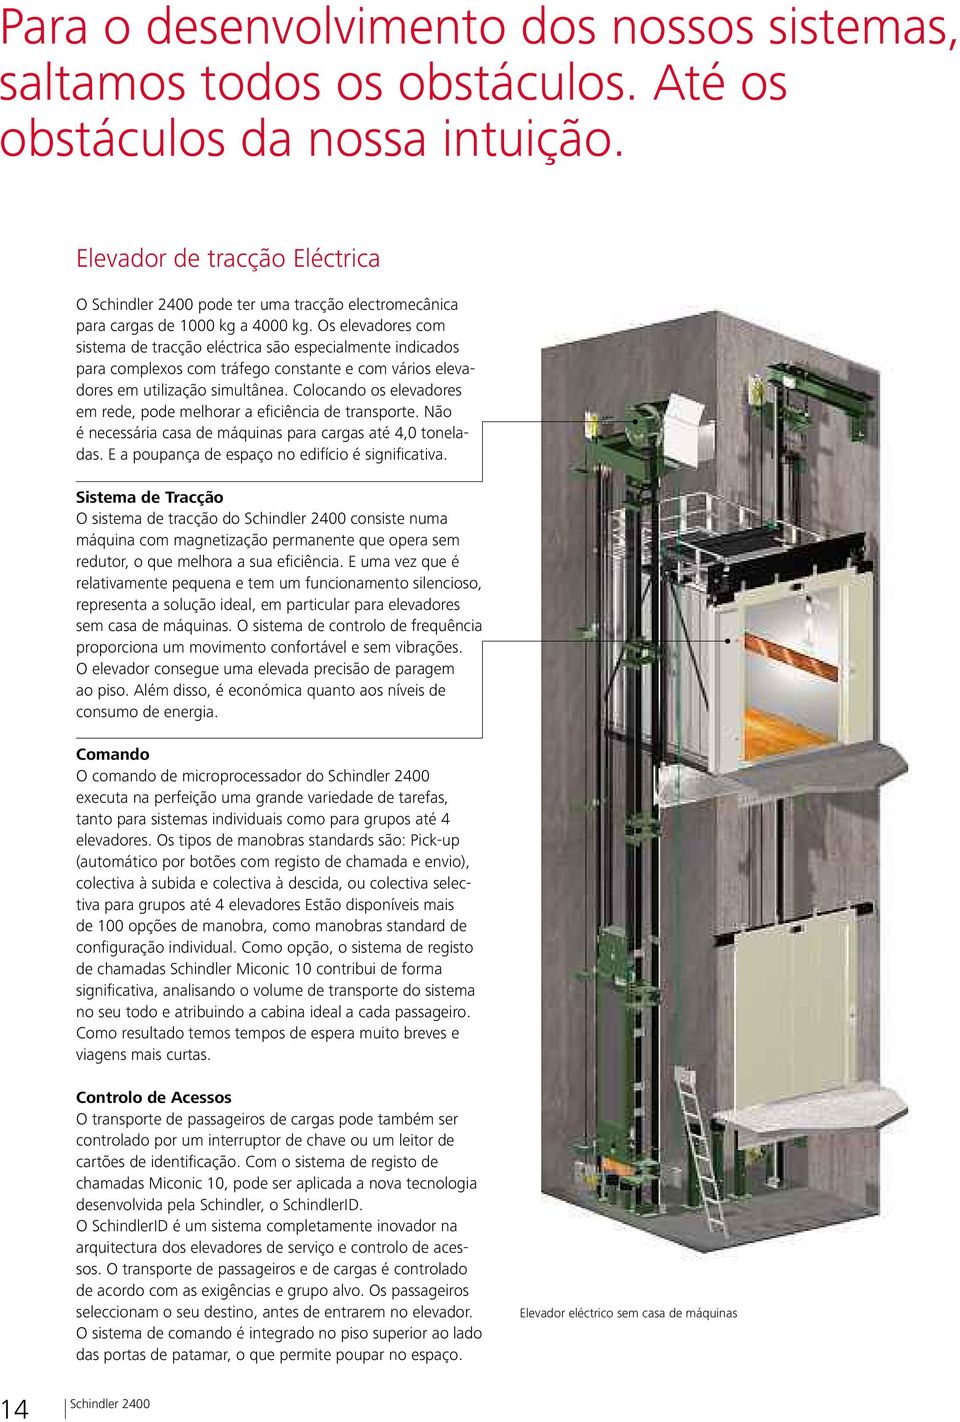 Os elevadores com sistema de tracção eléctrica são especialmente indicados para complexos com tráfego constante e com vários elevadores em utilização simultânea.